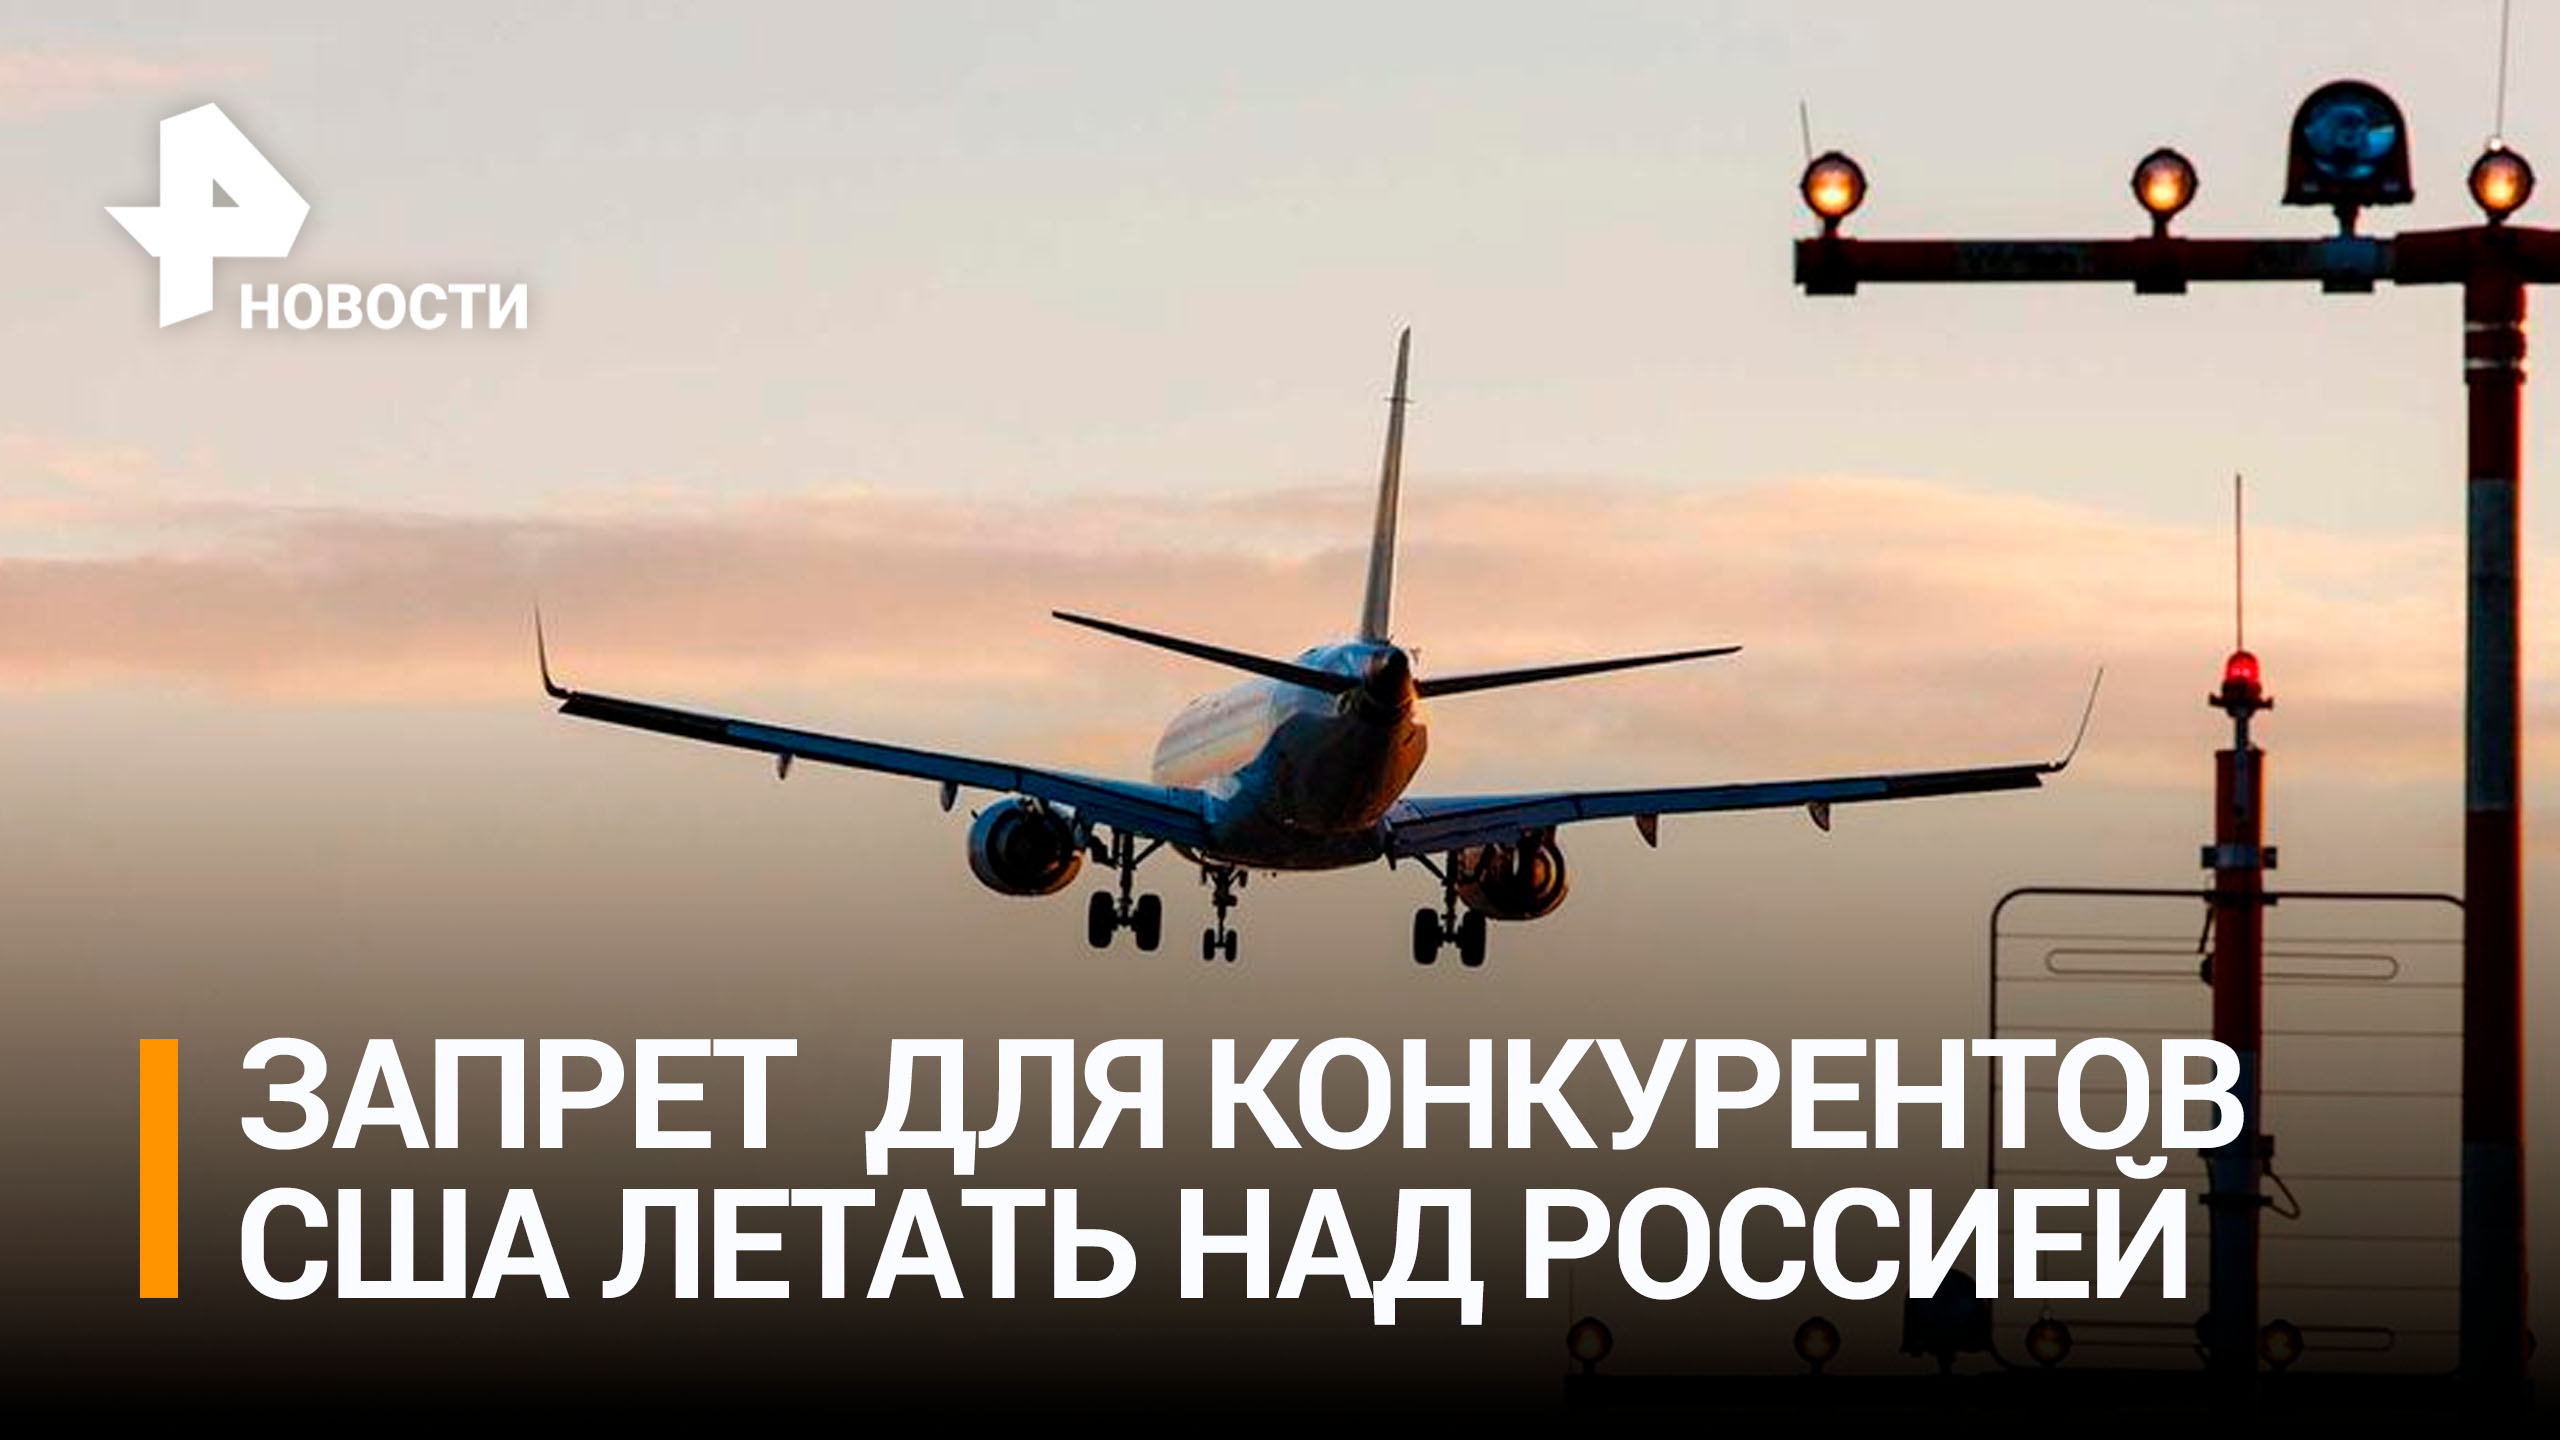 Авиакомпании США требуют запретить зарубежным конкурентам полеты над Россией / РЕН Новости